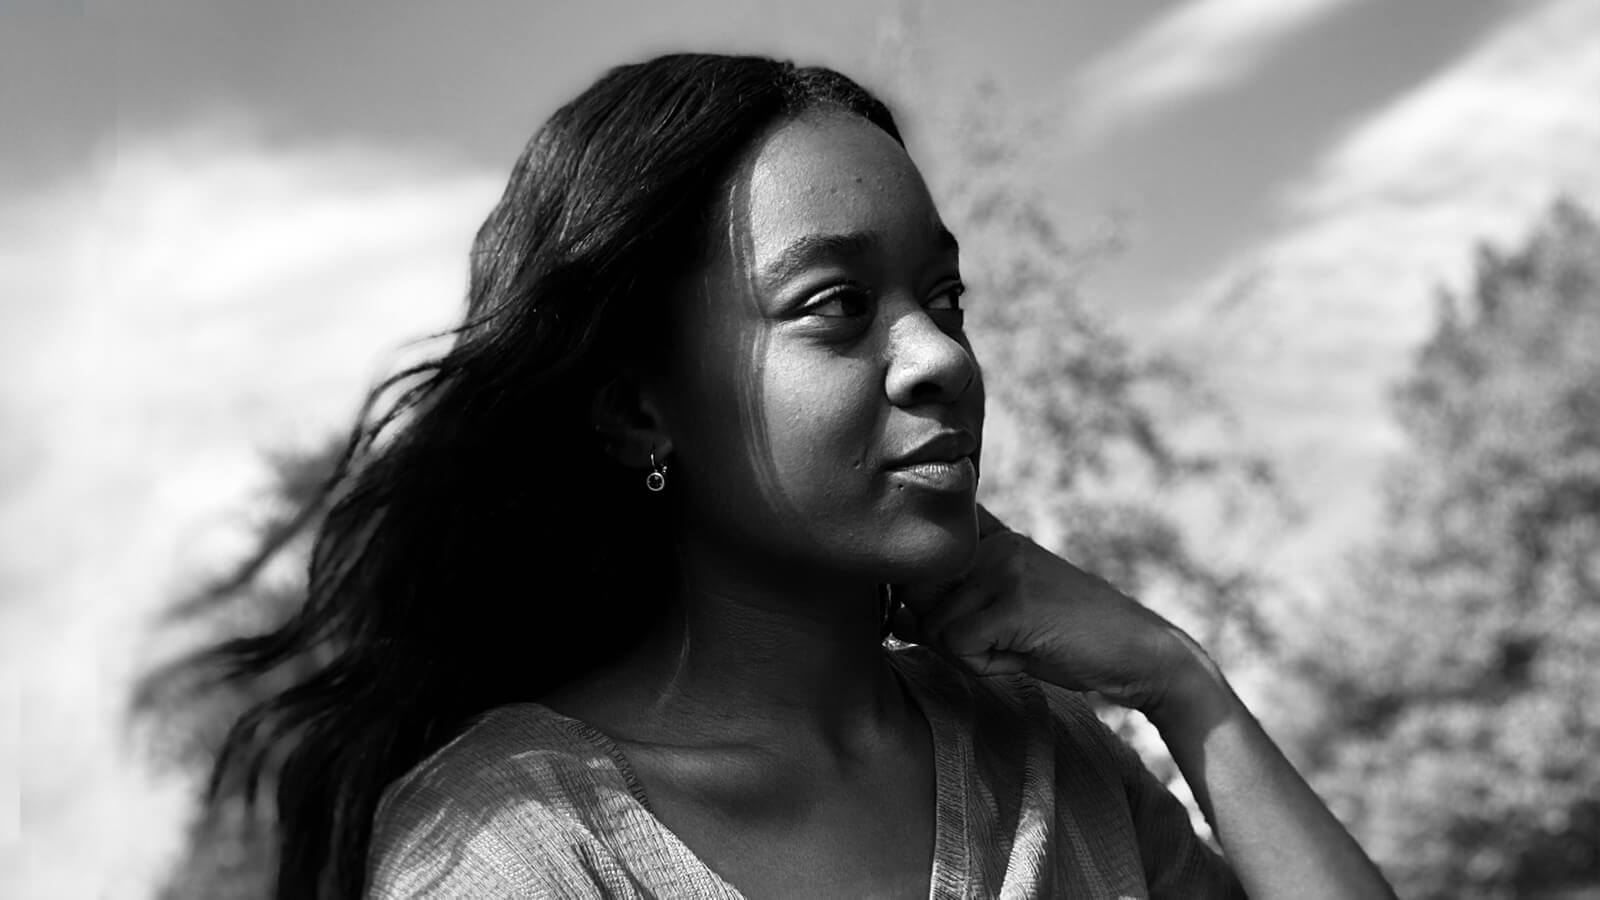 Portrait of The Black Curriculum founder Lavinya Stennett